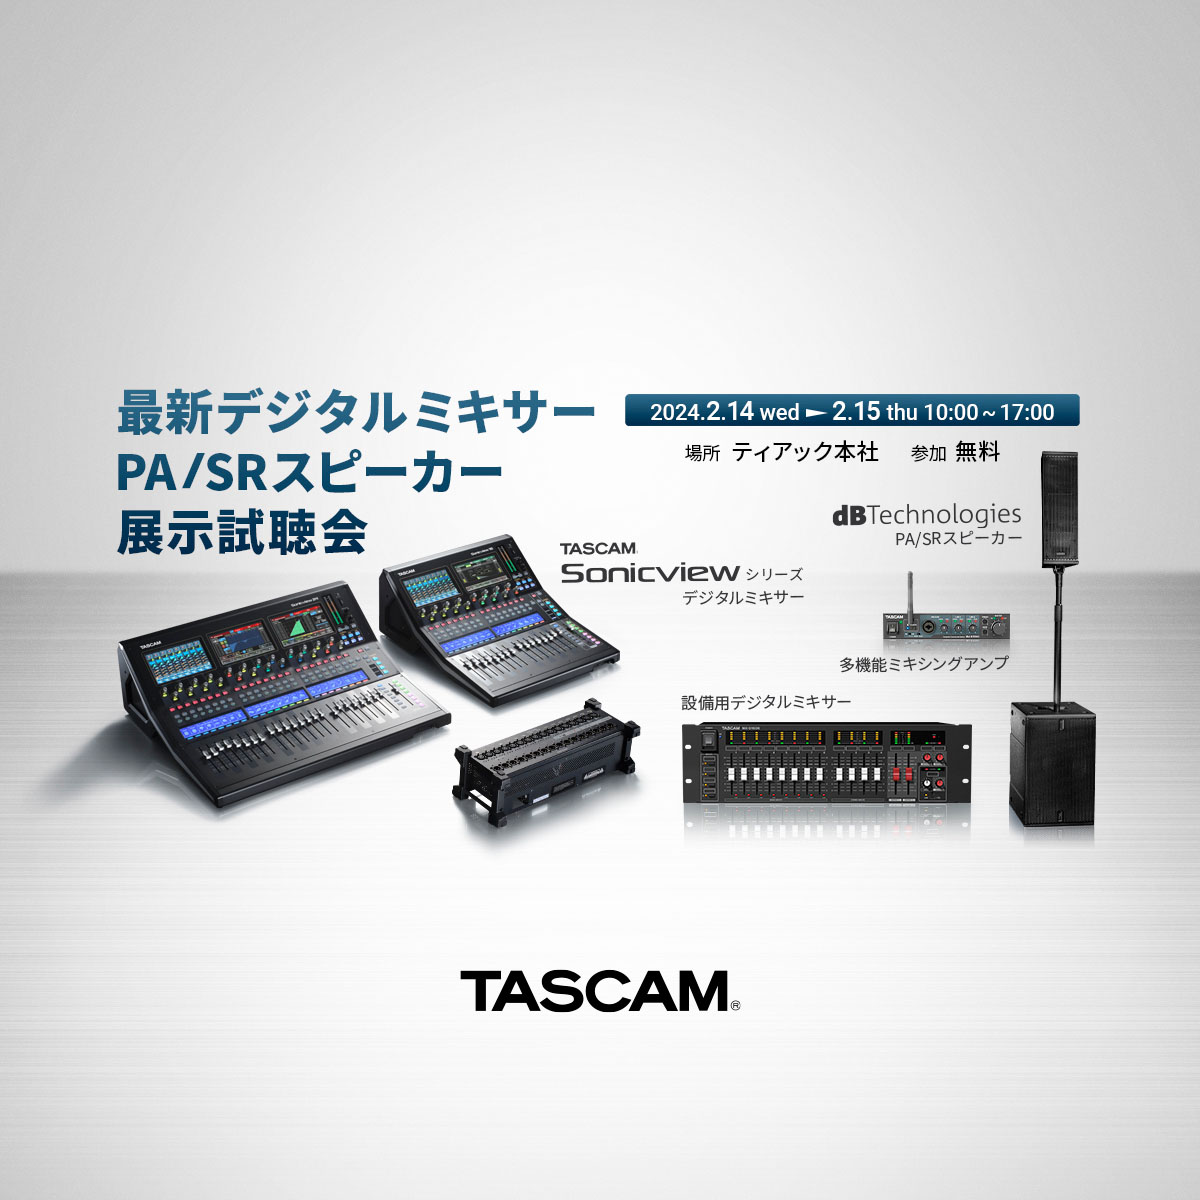 【2月開催決定】最新デジタルミキサー『TASCAM Sonicview』およびdBTechnologies PA/SRスピーカーの無料展示試聴会開催のお知らせ